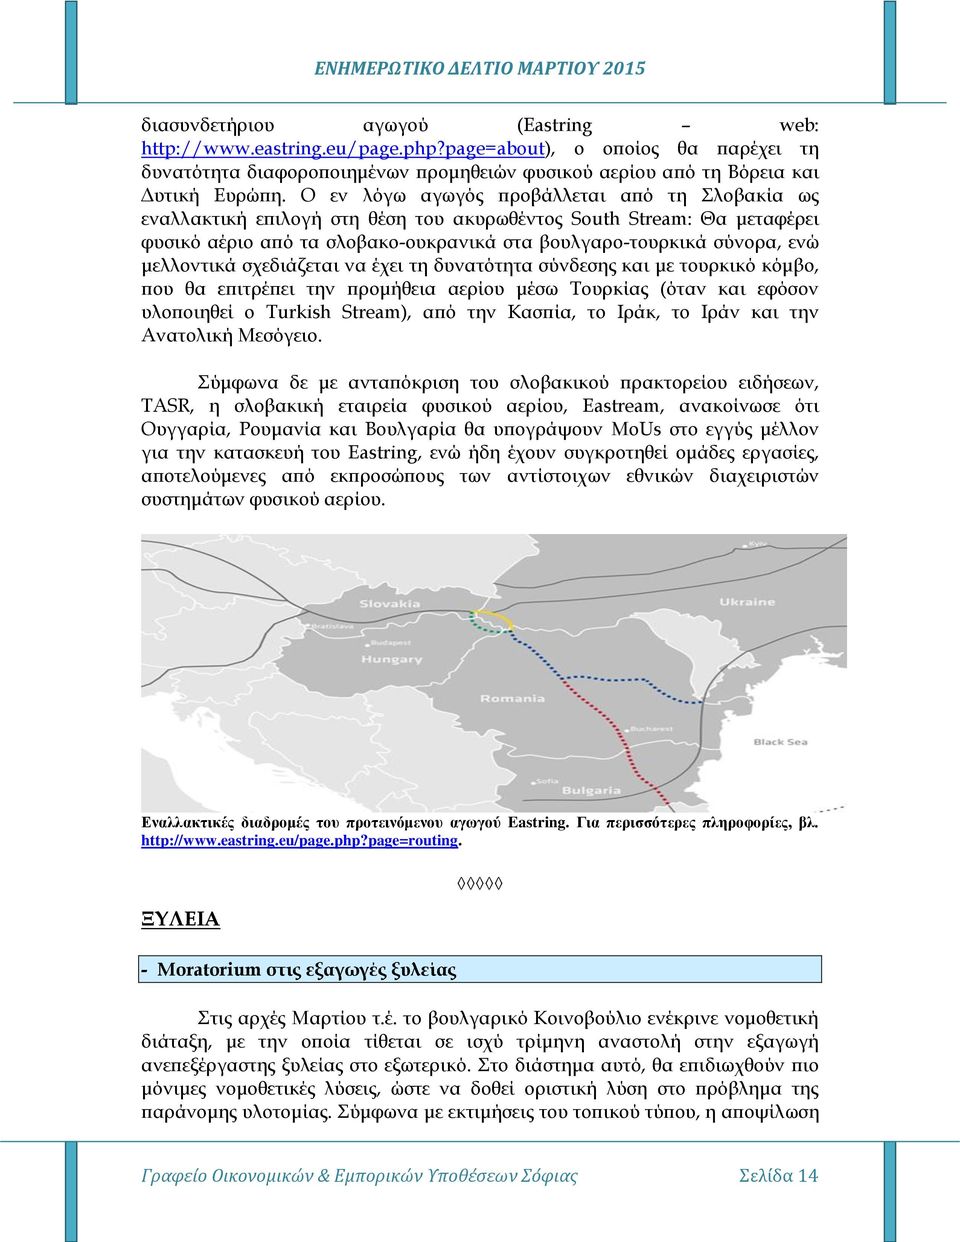 μελλοντικά σχεδιάζεται να έχει τη δυνατότητα σύνδεσης και με τουρκικό κόμβο, που θα επιτρέπει την προμήθεια αερίου μέσω Τουρκίας (όταν και εφόσον υλοποιηθεί ο Turkish Stream), από την Κασπία, το